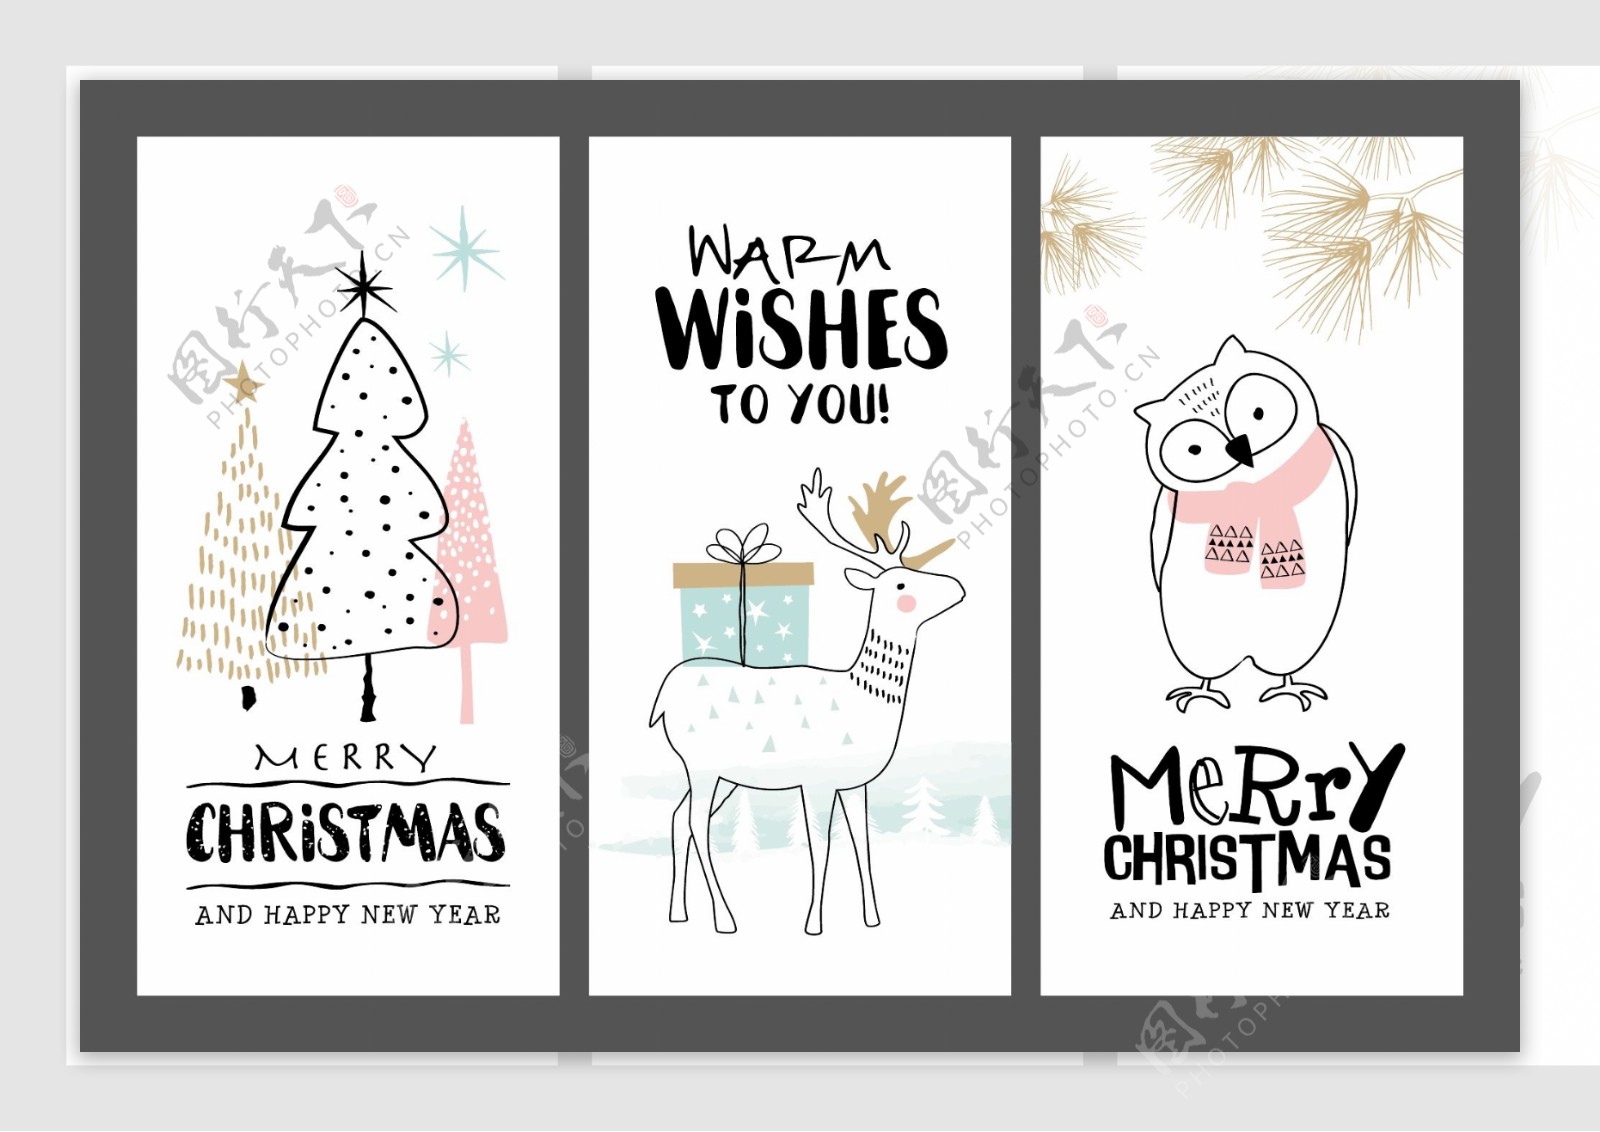 卡通圣诞节卡片动物创意卡片矢量